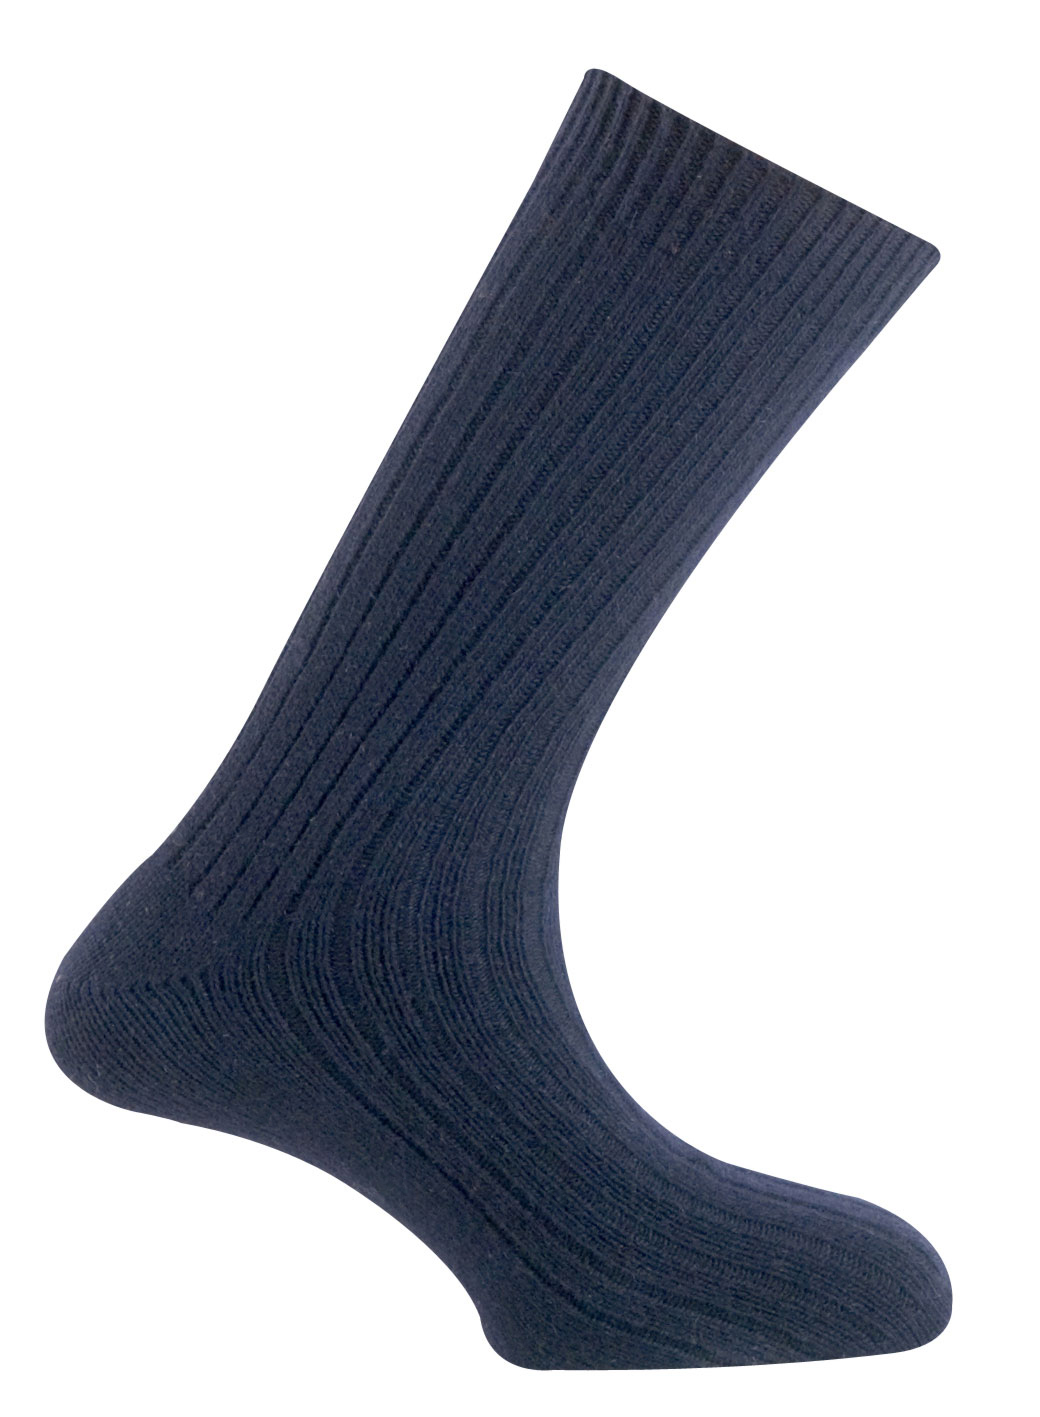 100 Primitive носки, 2 - тёмно-синий Mund, цвет темно-синий, размер M - фото 1